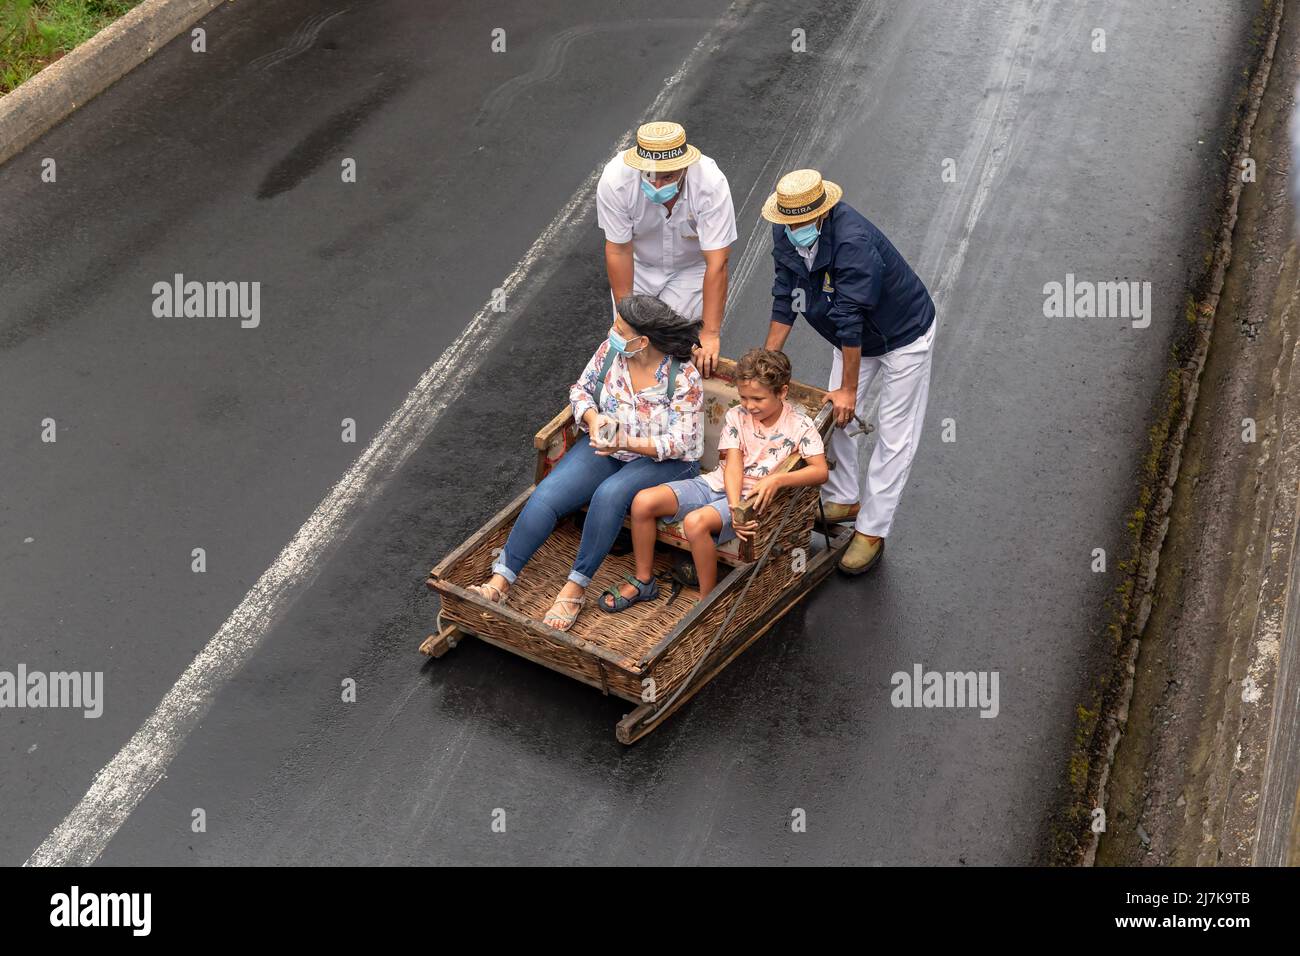 FUNCHAL, PORTOGALLO - 24 AGOSTO 2021: Donna e bambino non identificati rotolare giù per la strada in cesti di vimini (toboga) con l'aiuto dei conducenti. Foto Stock